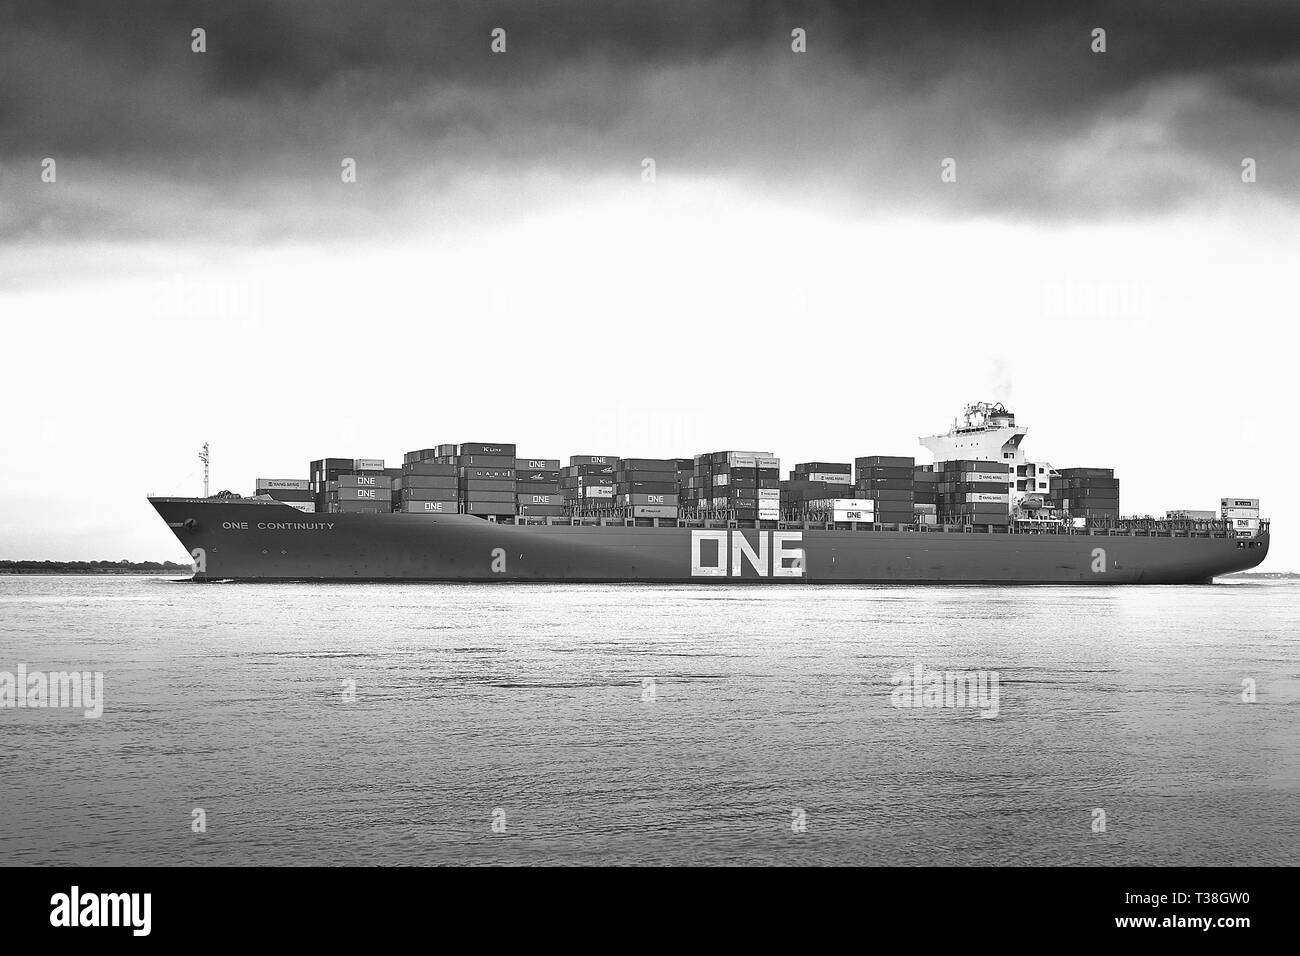 Photo en noir et blanc de l'océan Express réseau porte-conteneurs, une continuité, en cours, En Route de Hambourg pour le Port de Southampton, Royaume-Uni. Banque D'Images